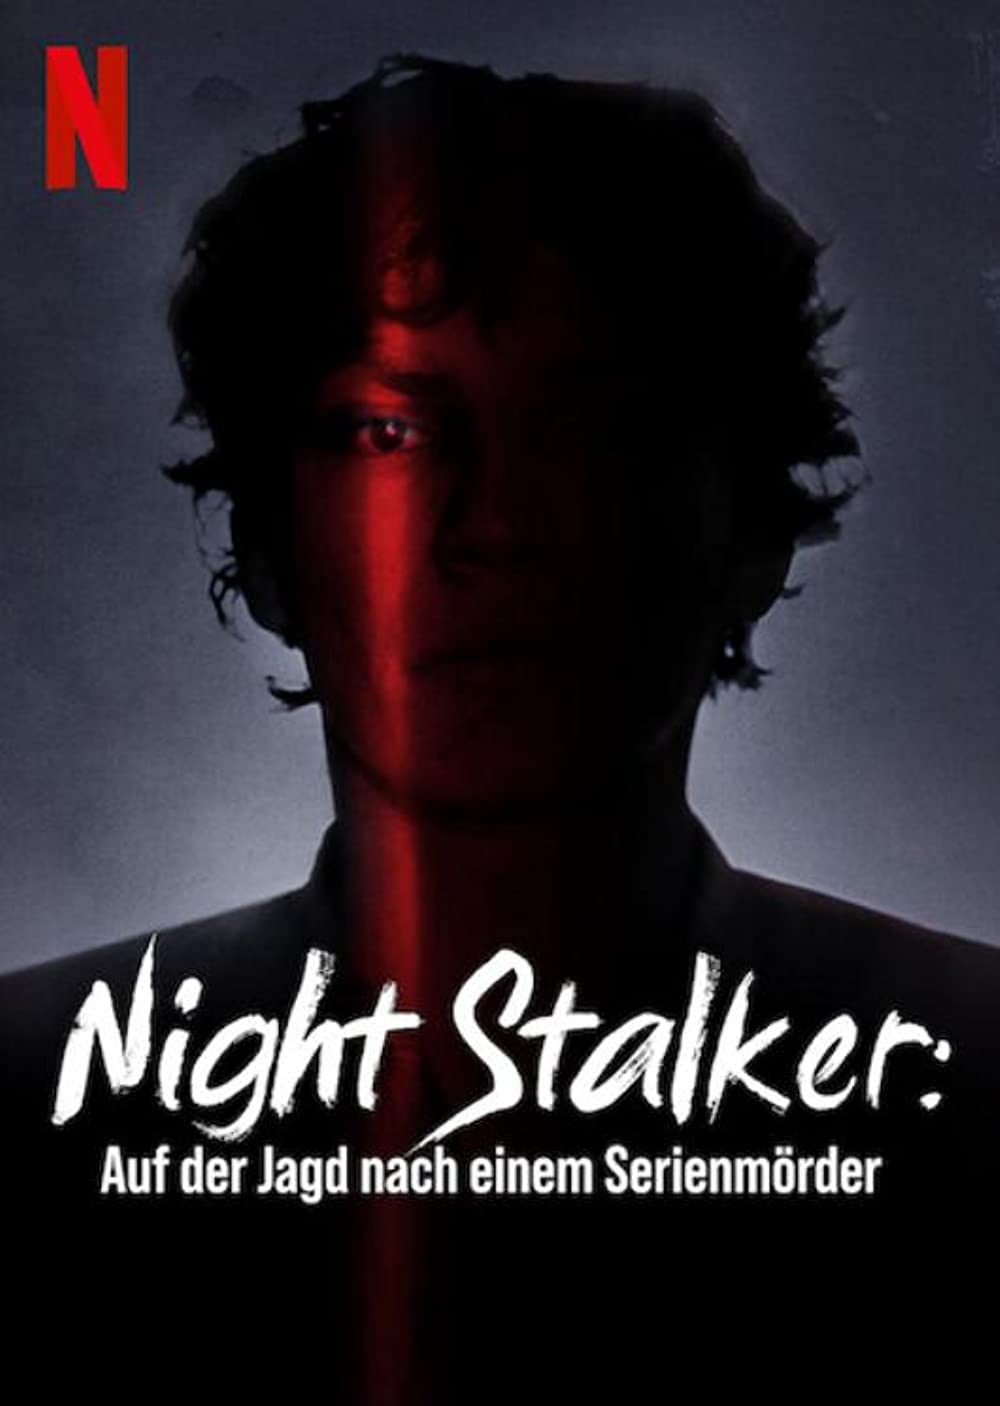 Filmbeschreibung zu Night Stalker: Auf der Jagd nach einem Serienmörder